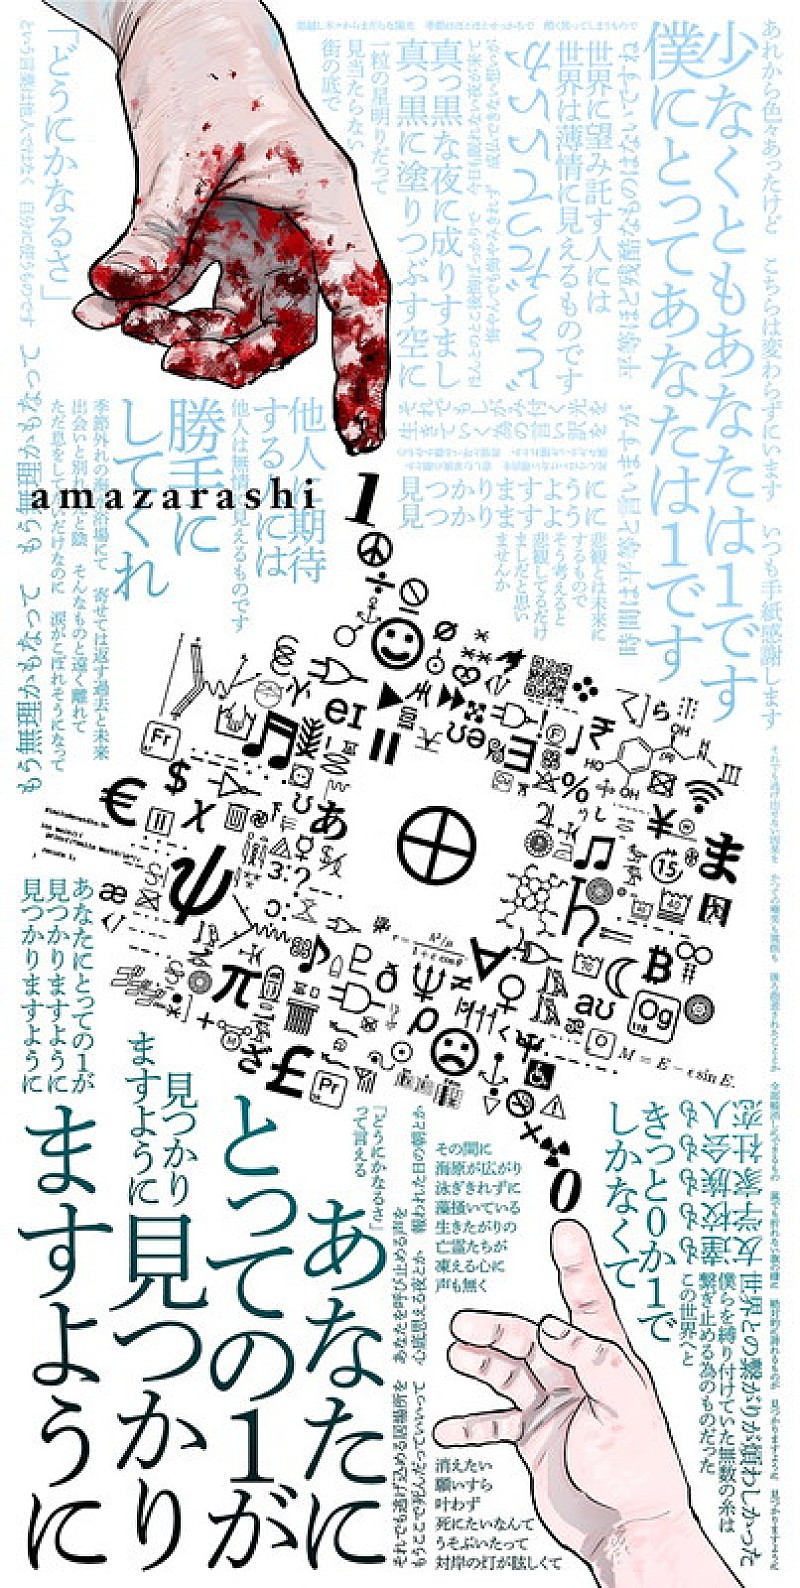 amazarashi×漫画『チ。』往復書簡プロジェクトがスタート、第一弾は魚